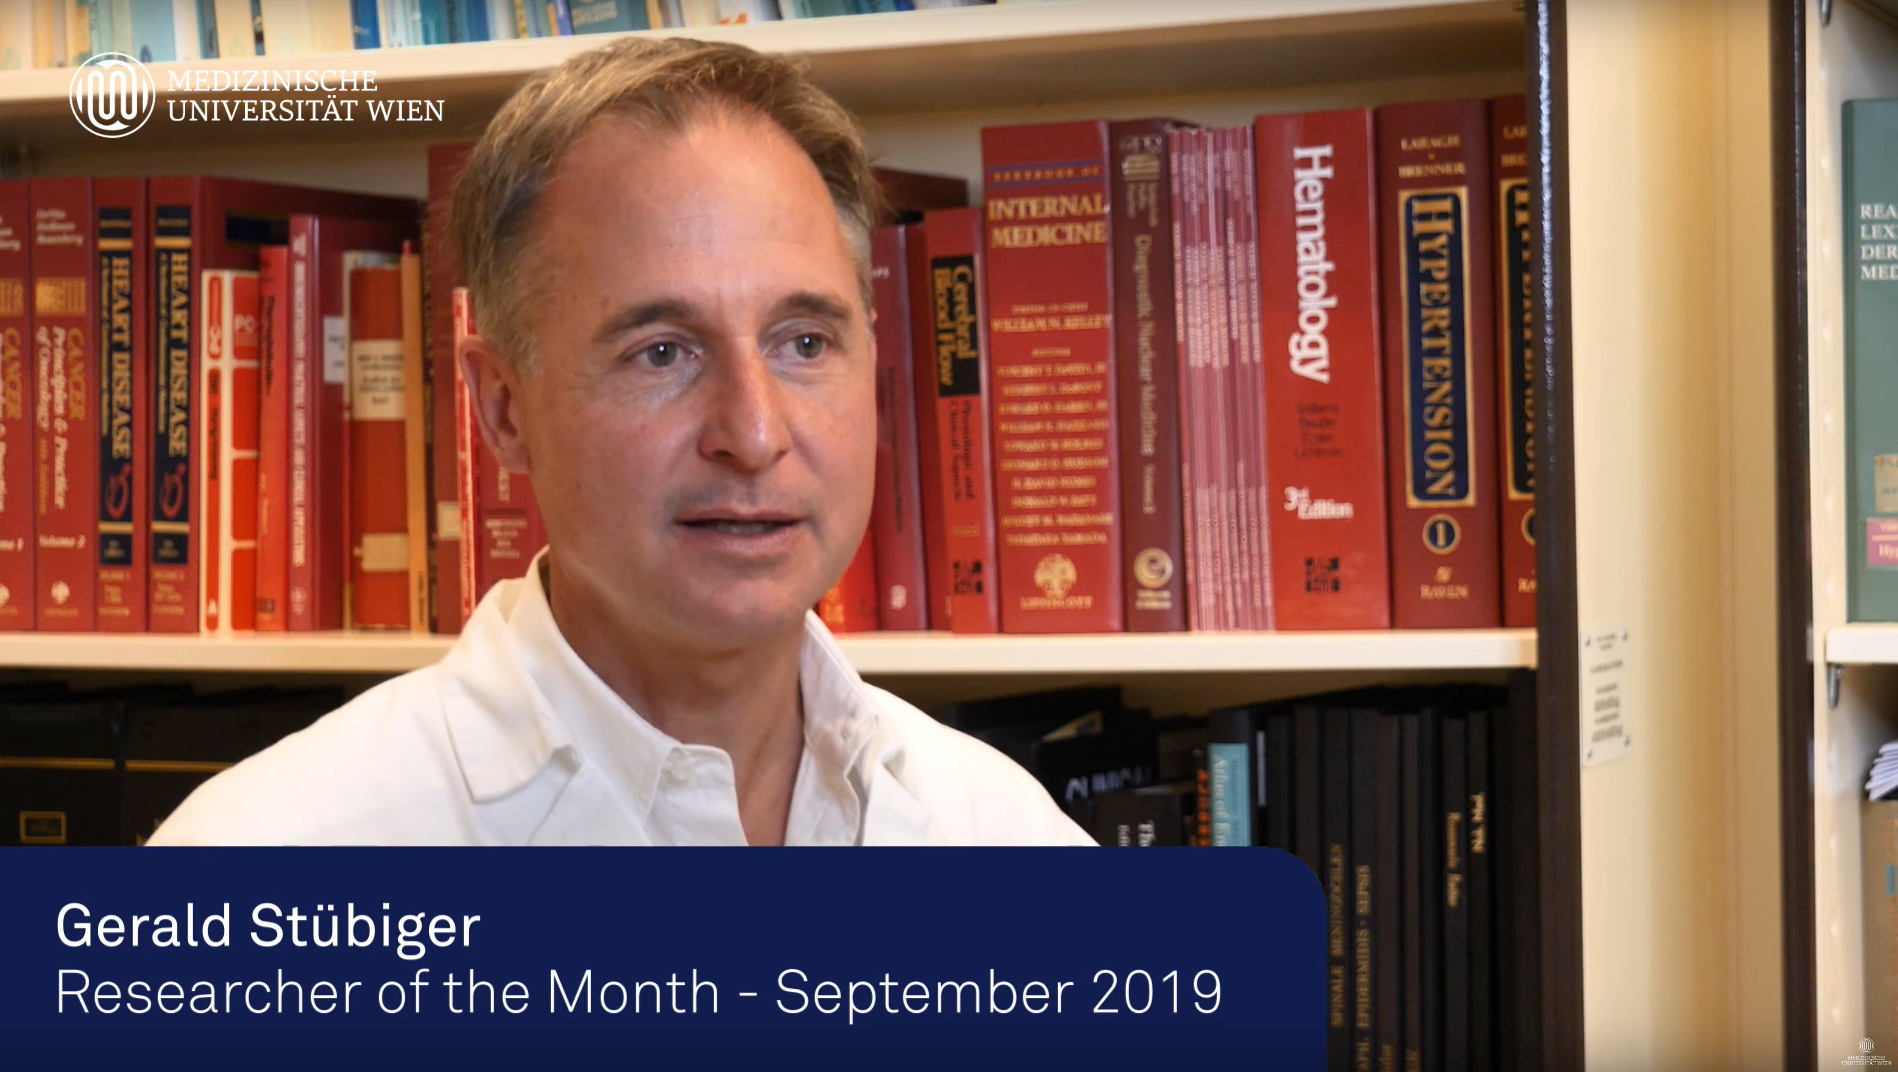 MedUni Wien - Researcher of the Month | September 2019: Dr. Stübiger